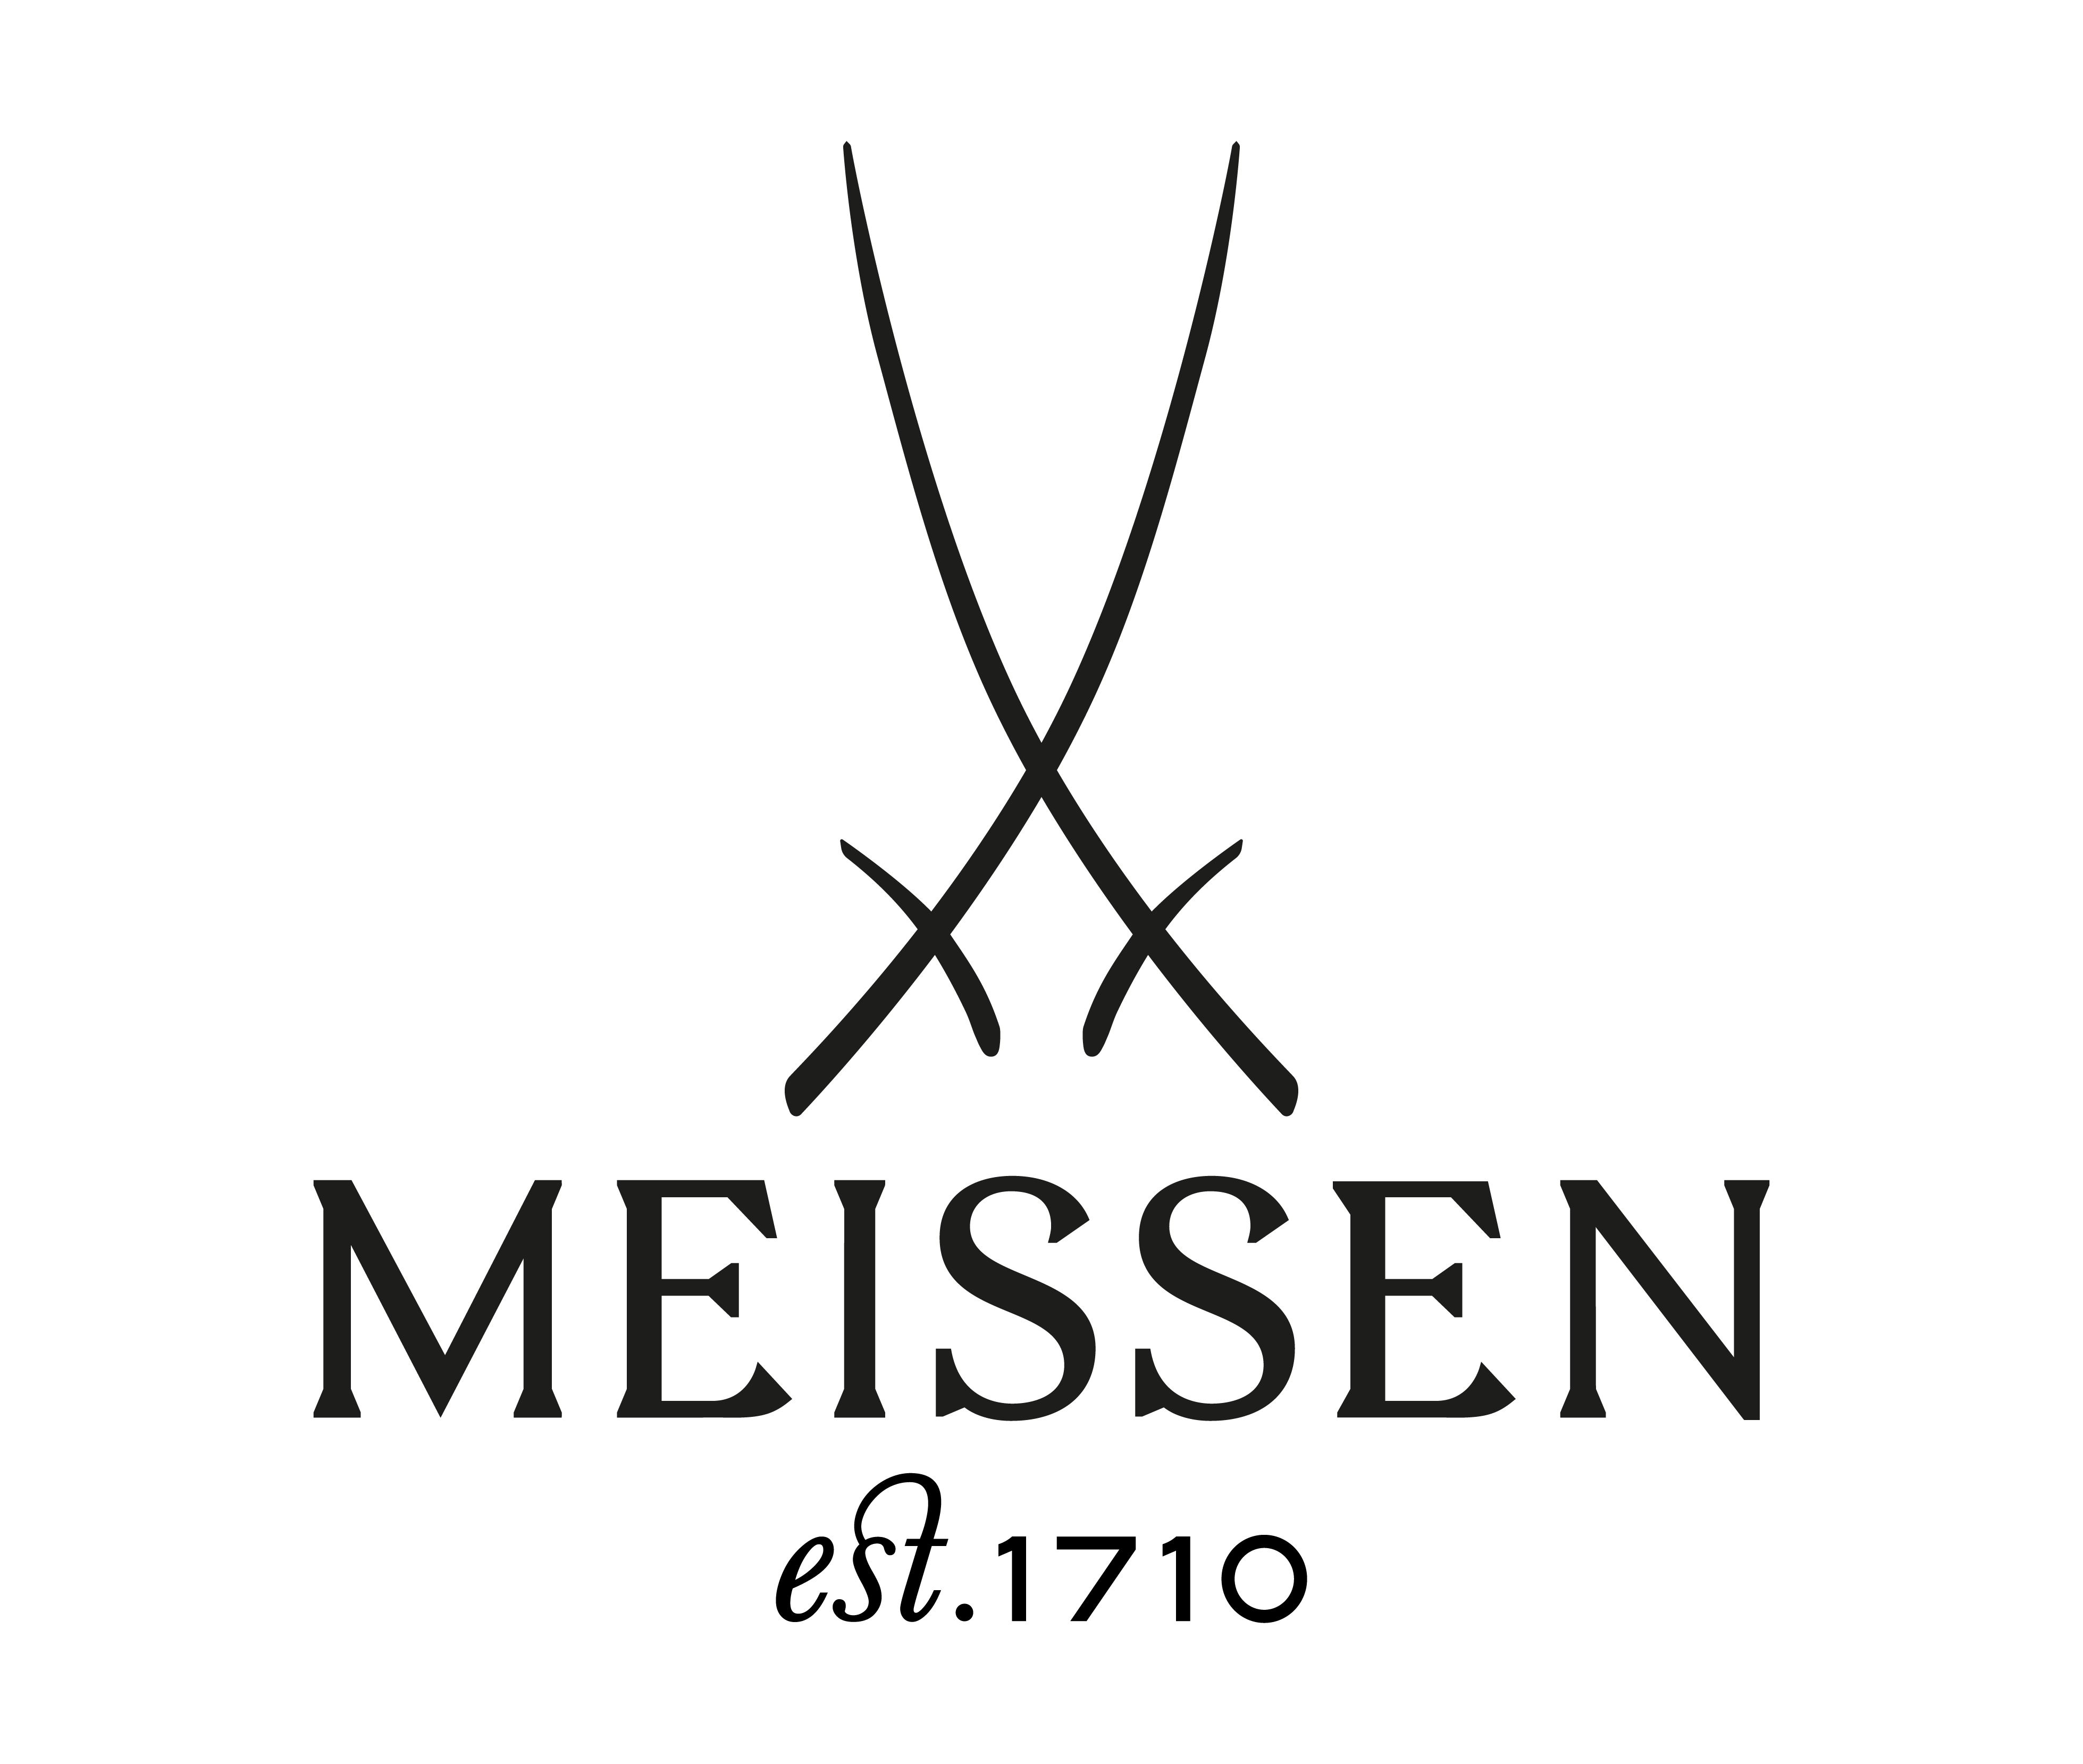 Meissen